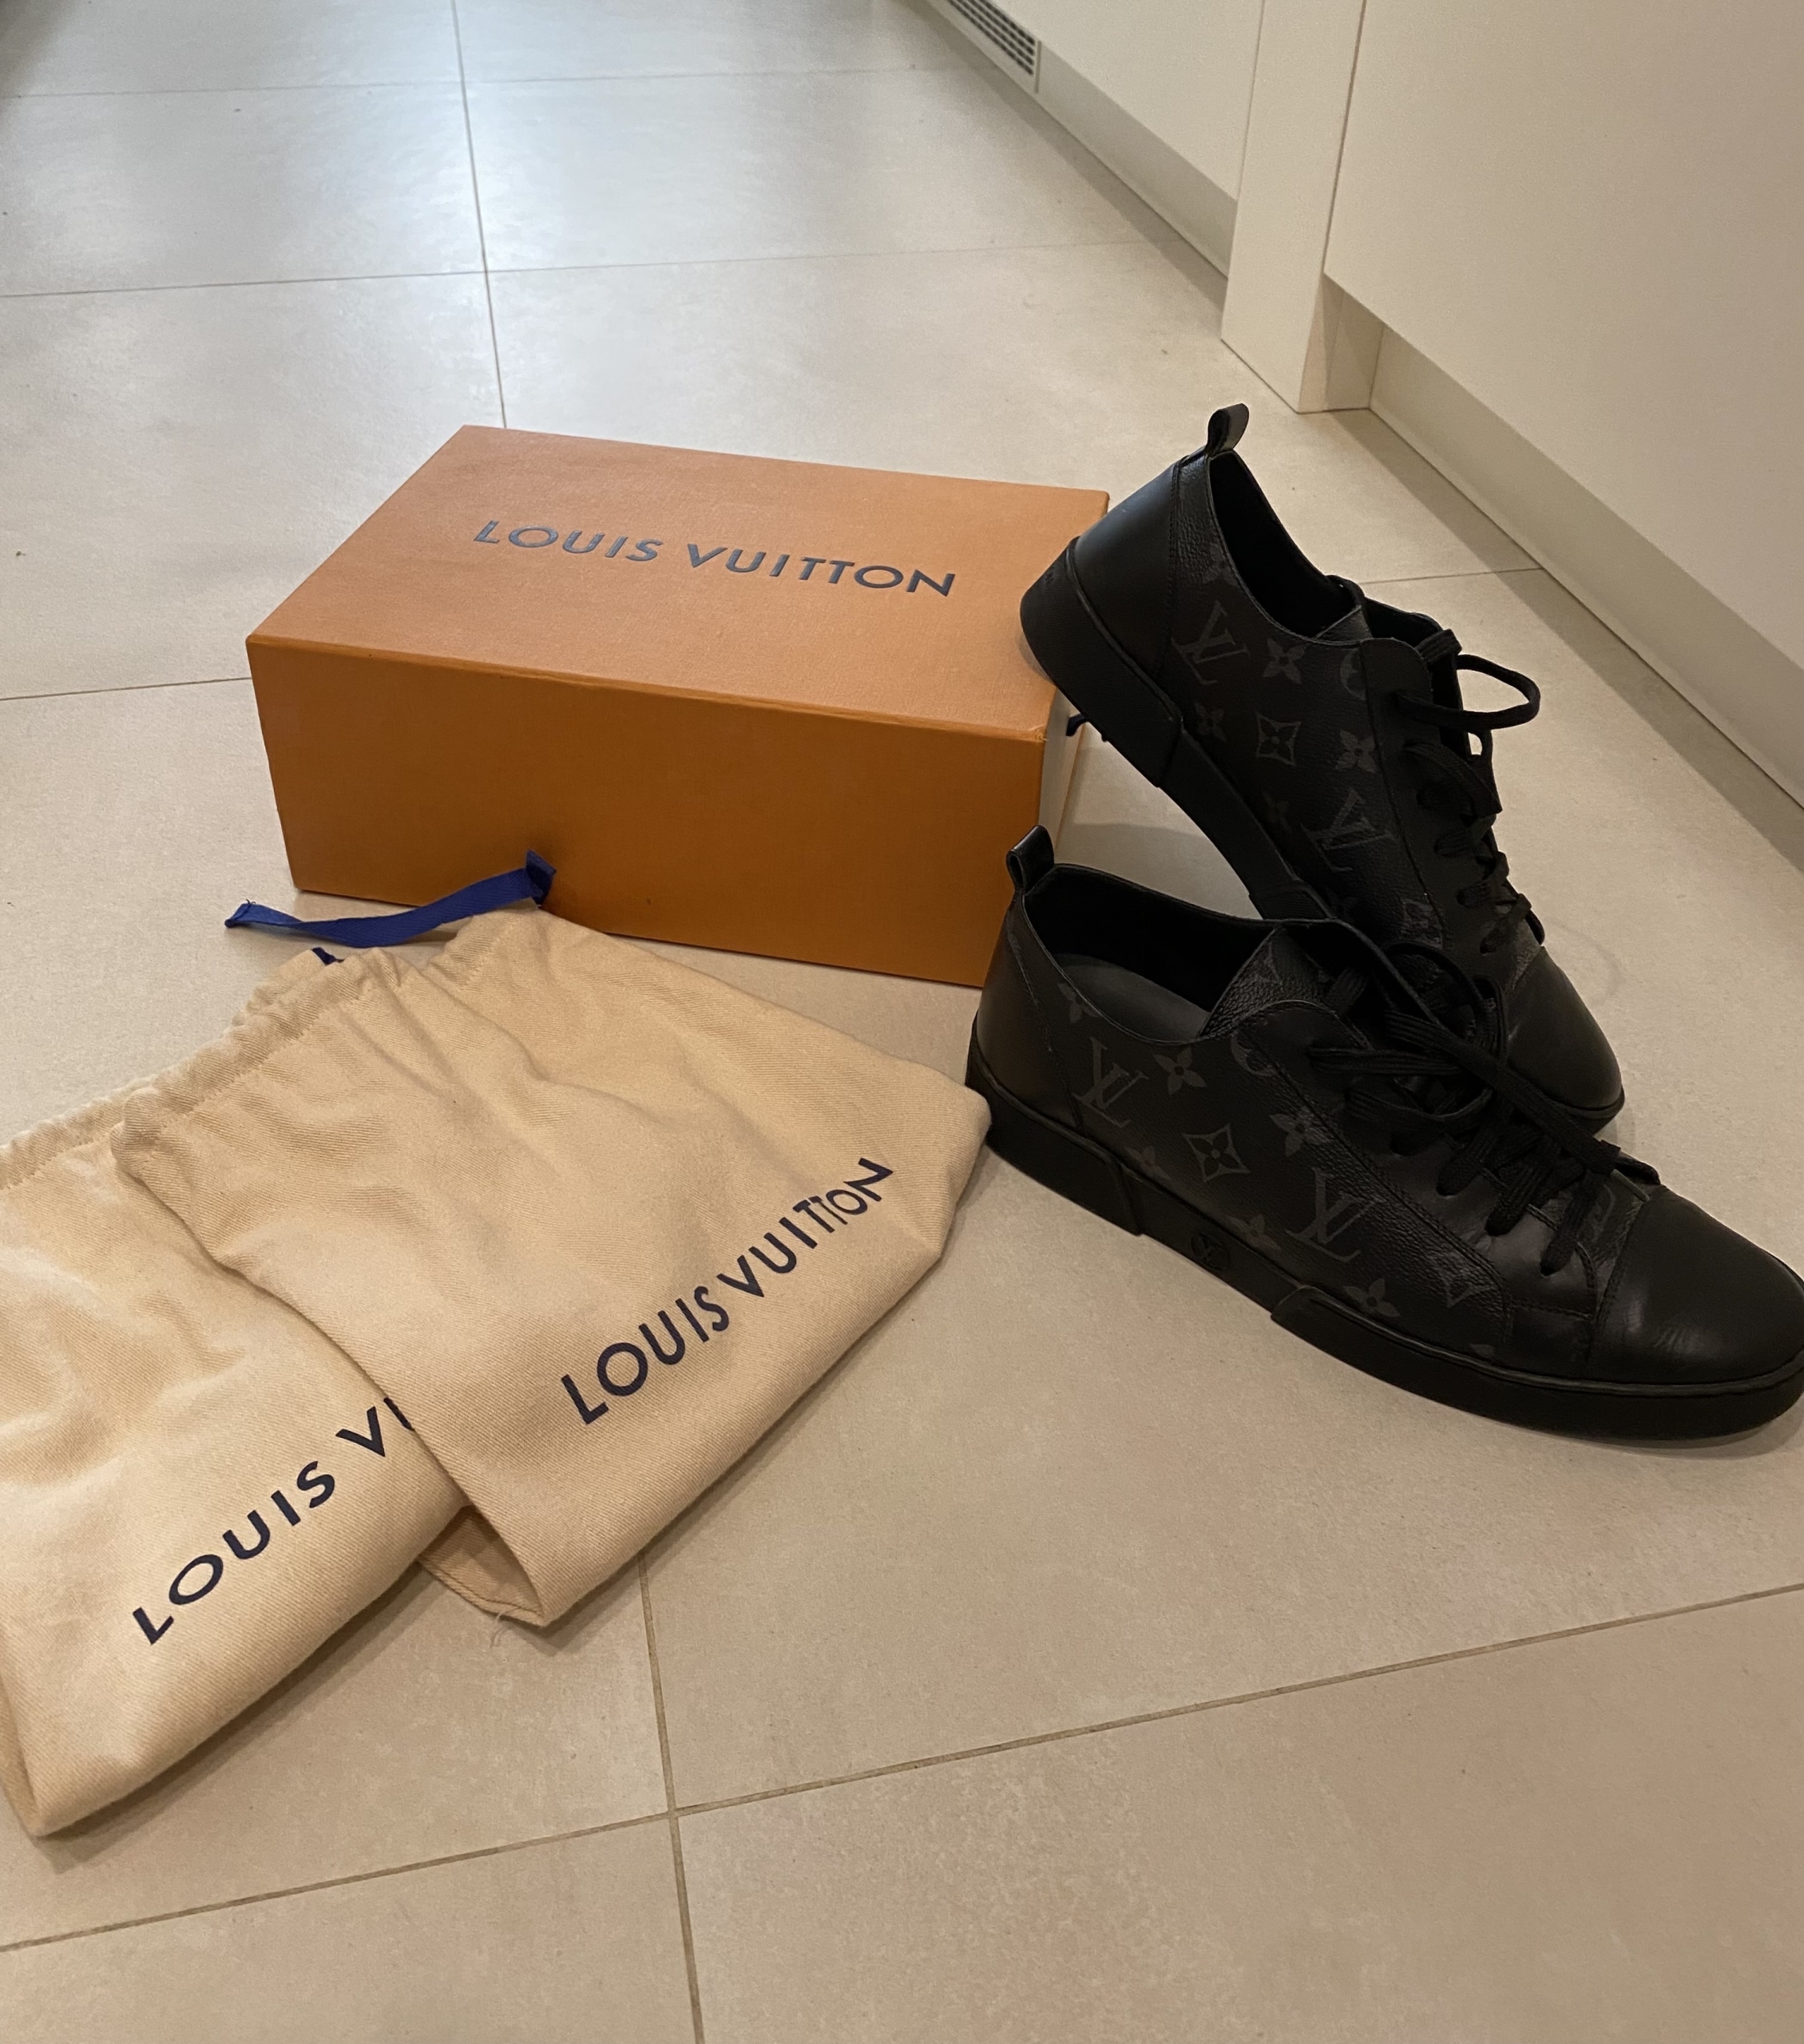 Louis Vuitton 100% oryg vitkac - 7514435662 - oficjalne archiwum Allegro